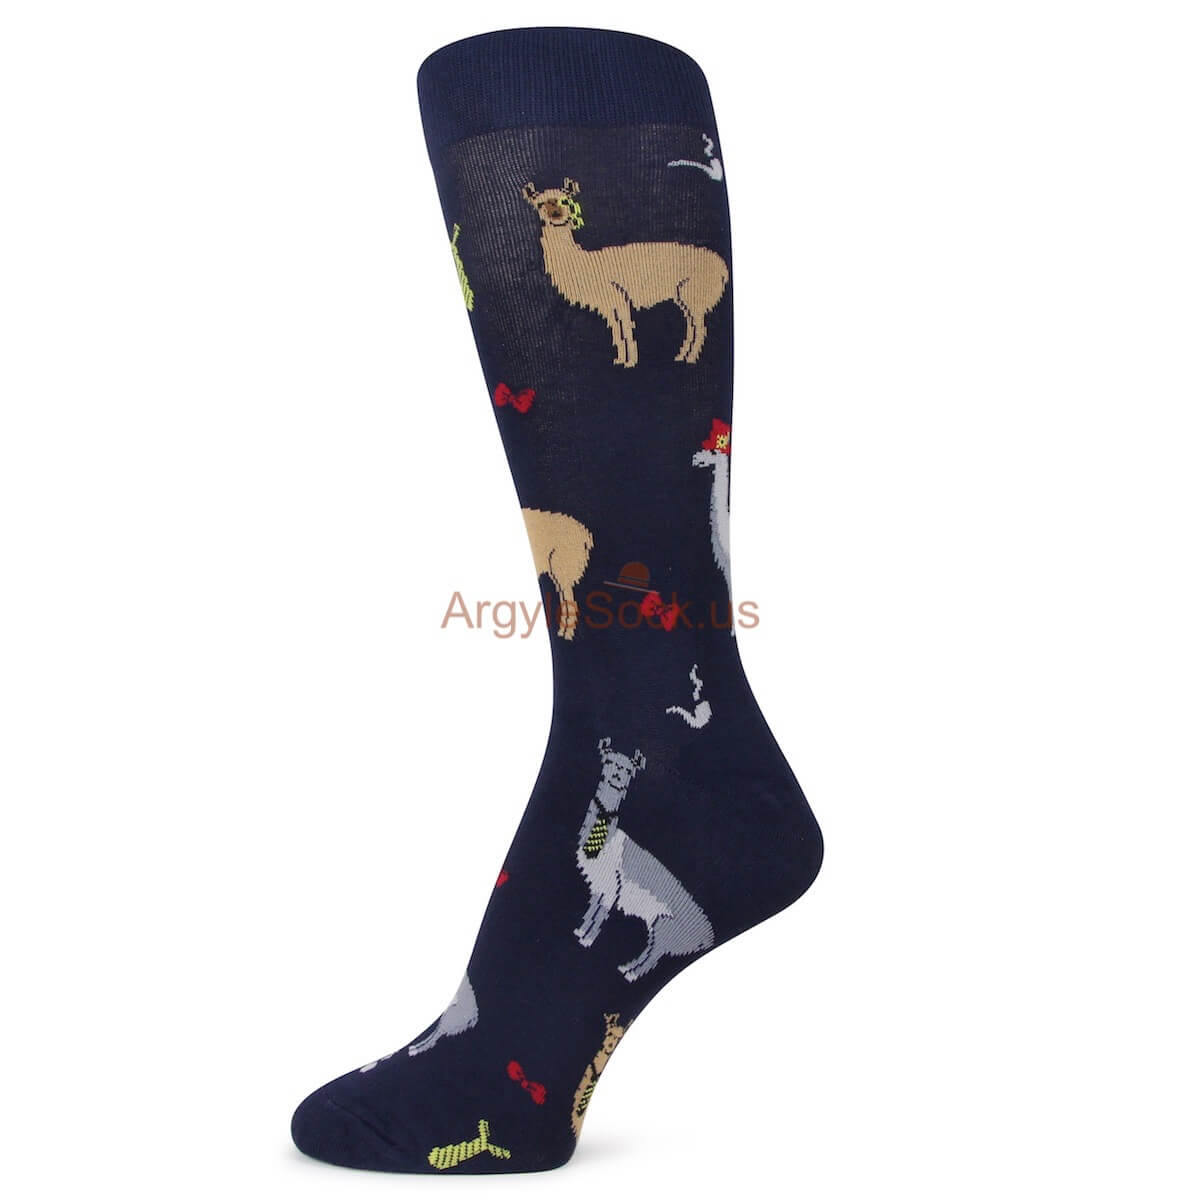 Lama Themed Socks for Men